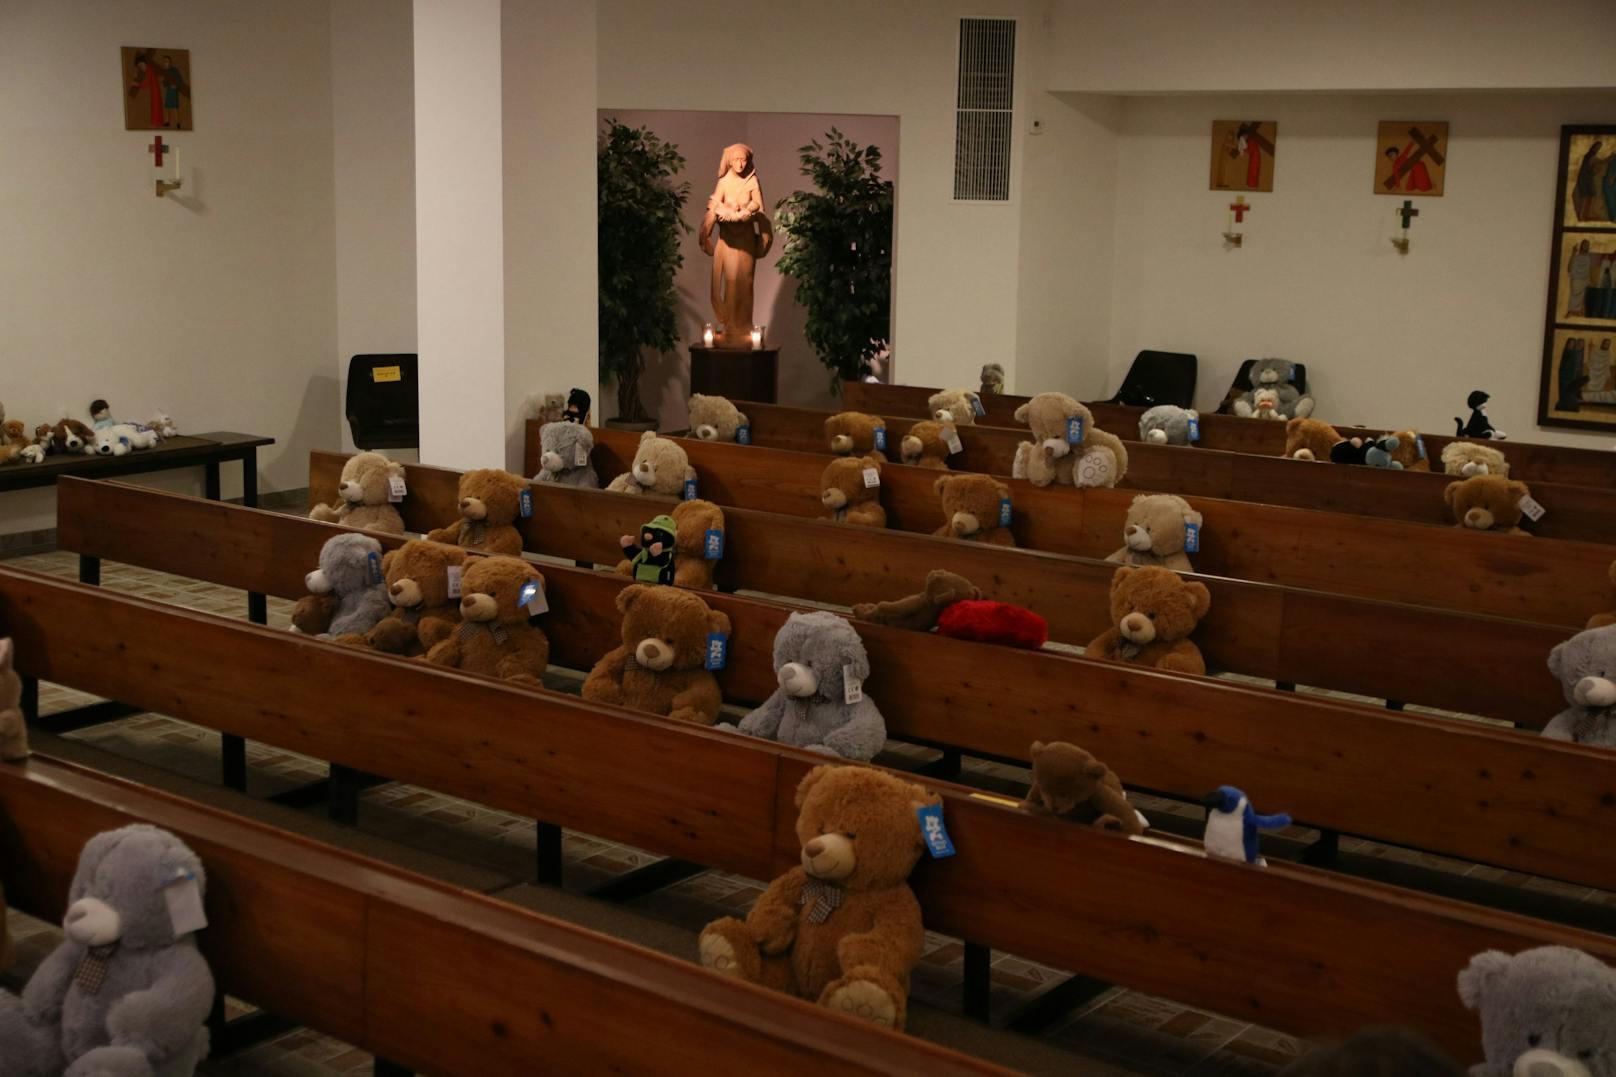 Nach der Messe wurden die brandneuen Stoffbären an bedürftige Kinder verschenkt.&nbsp;